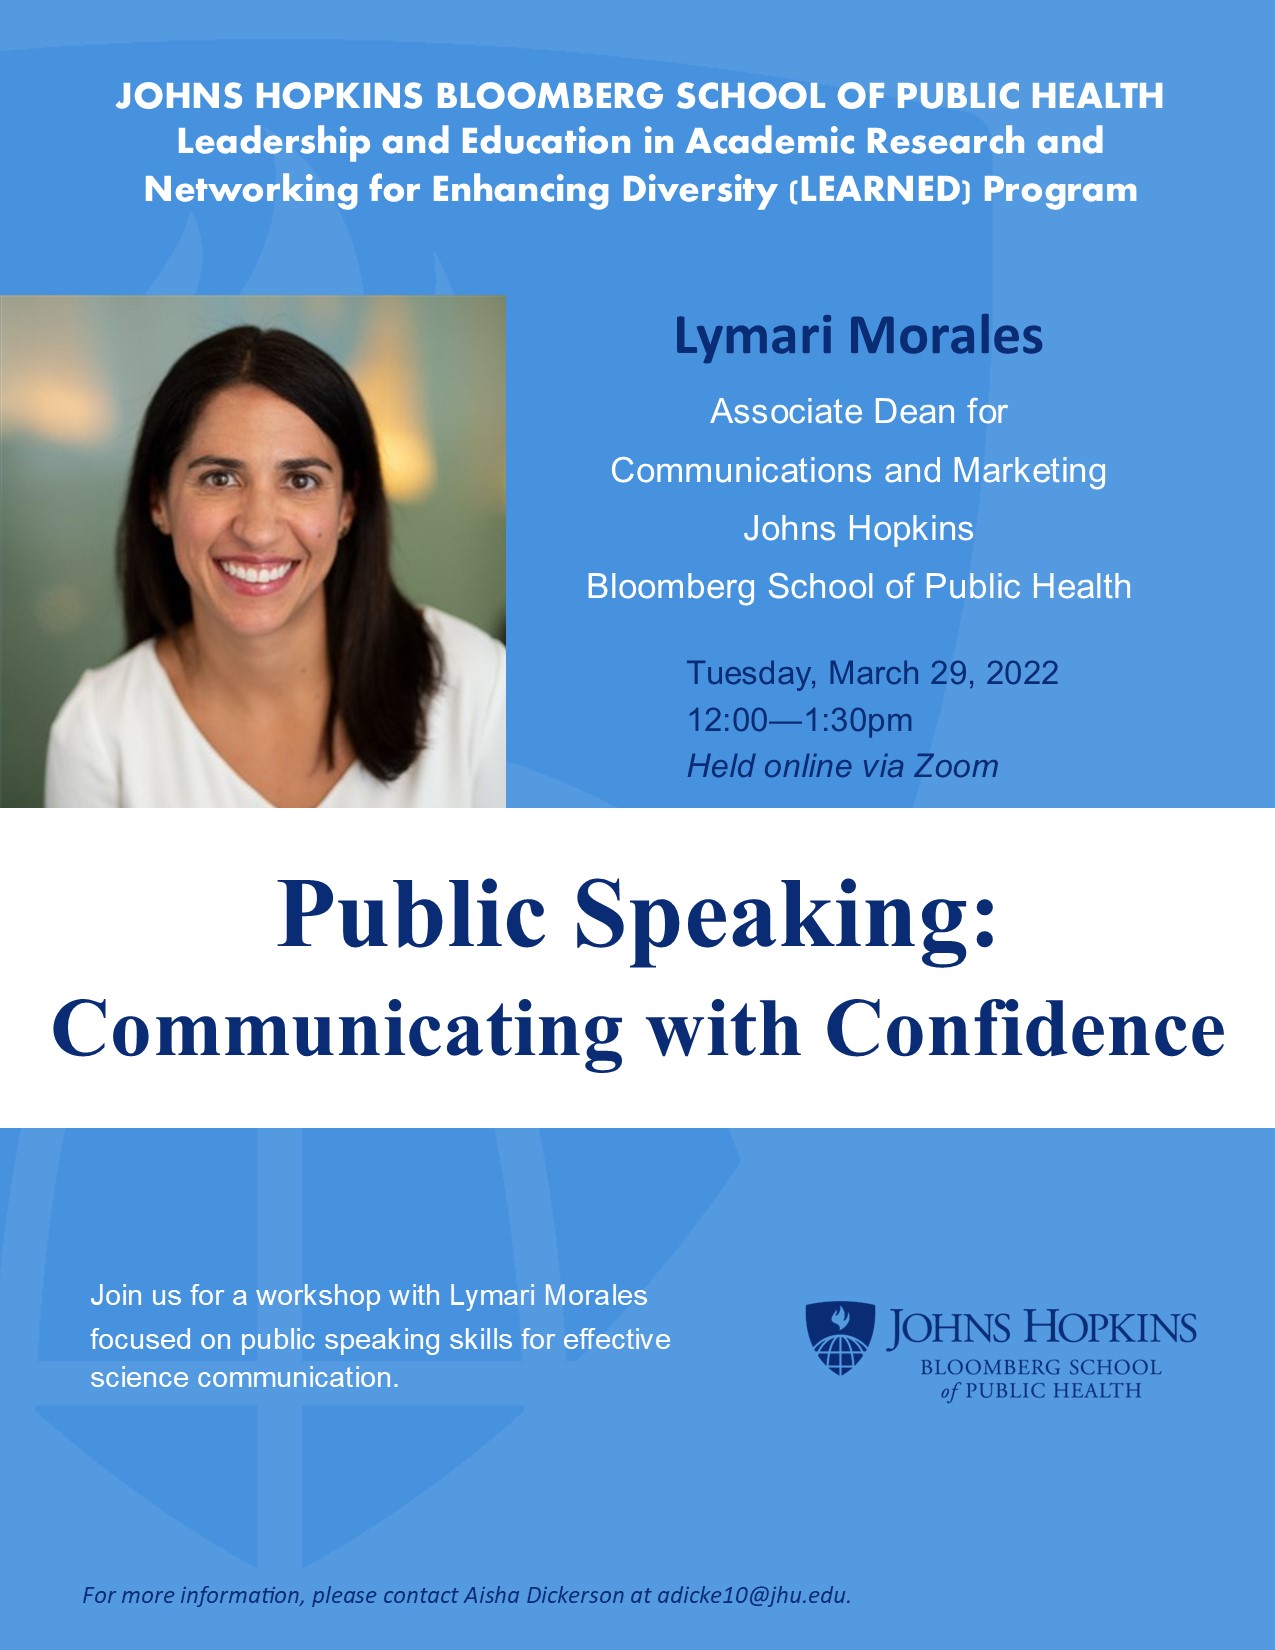 LEARNED Public Speaking Workshop